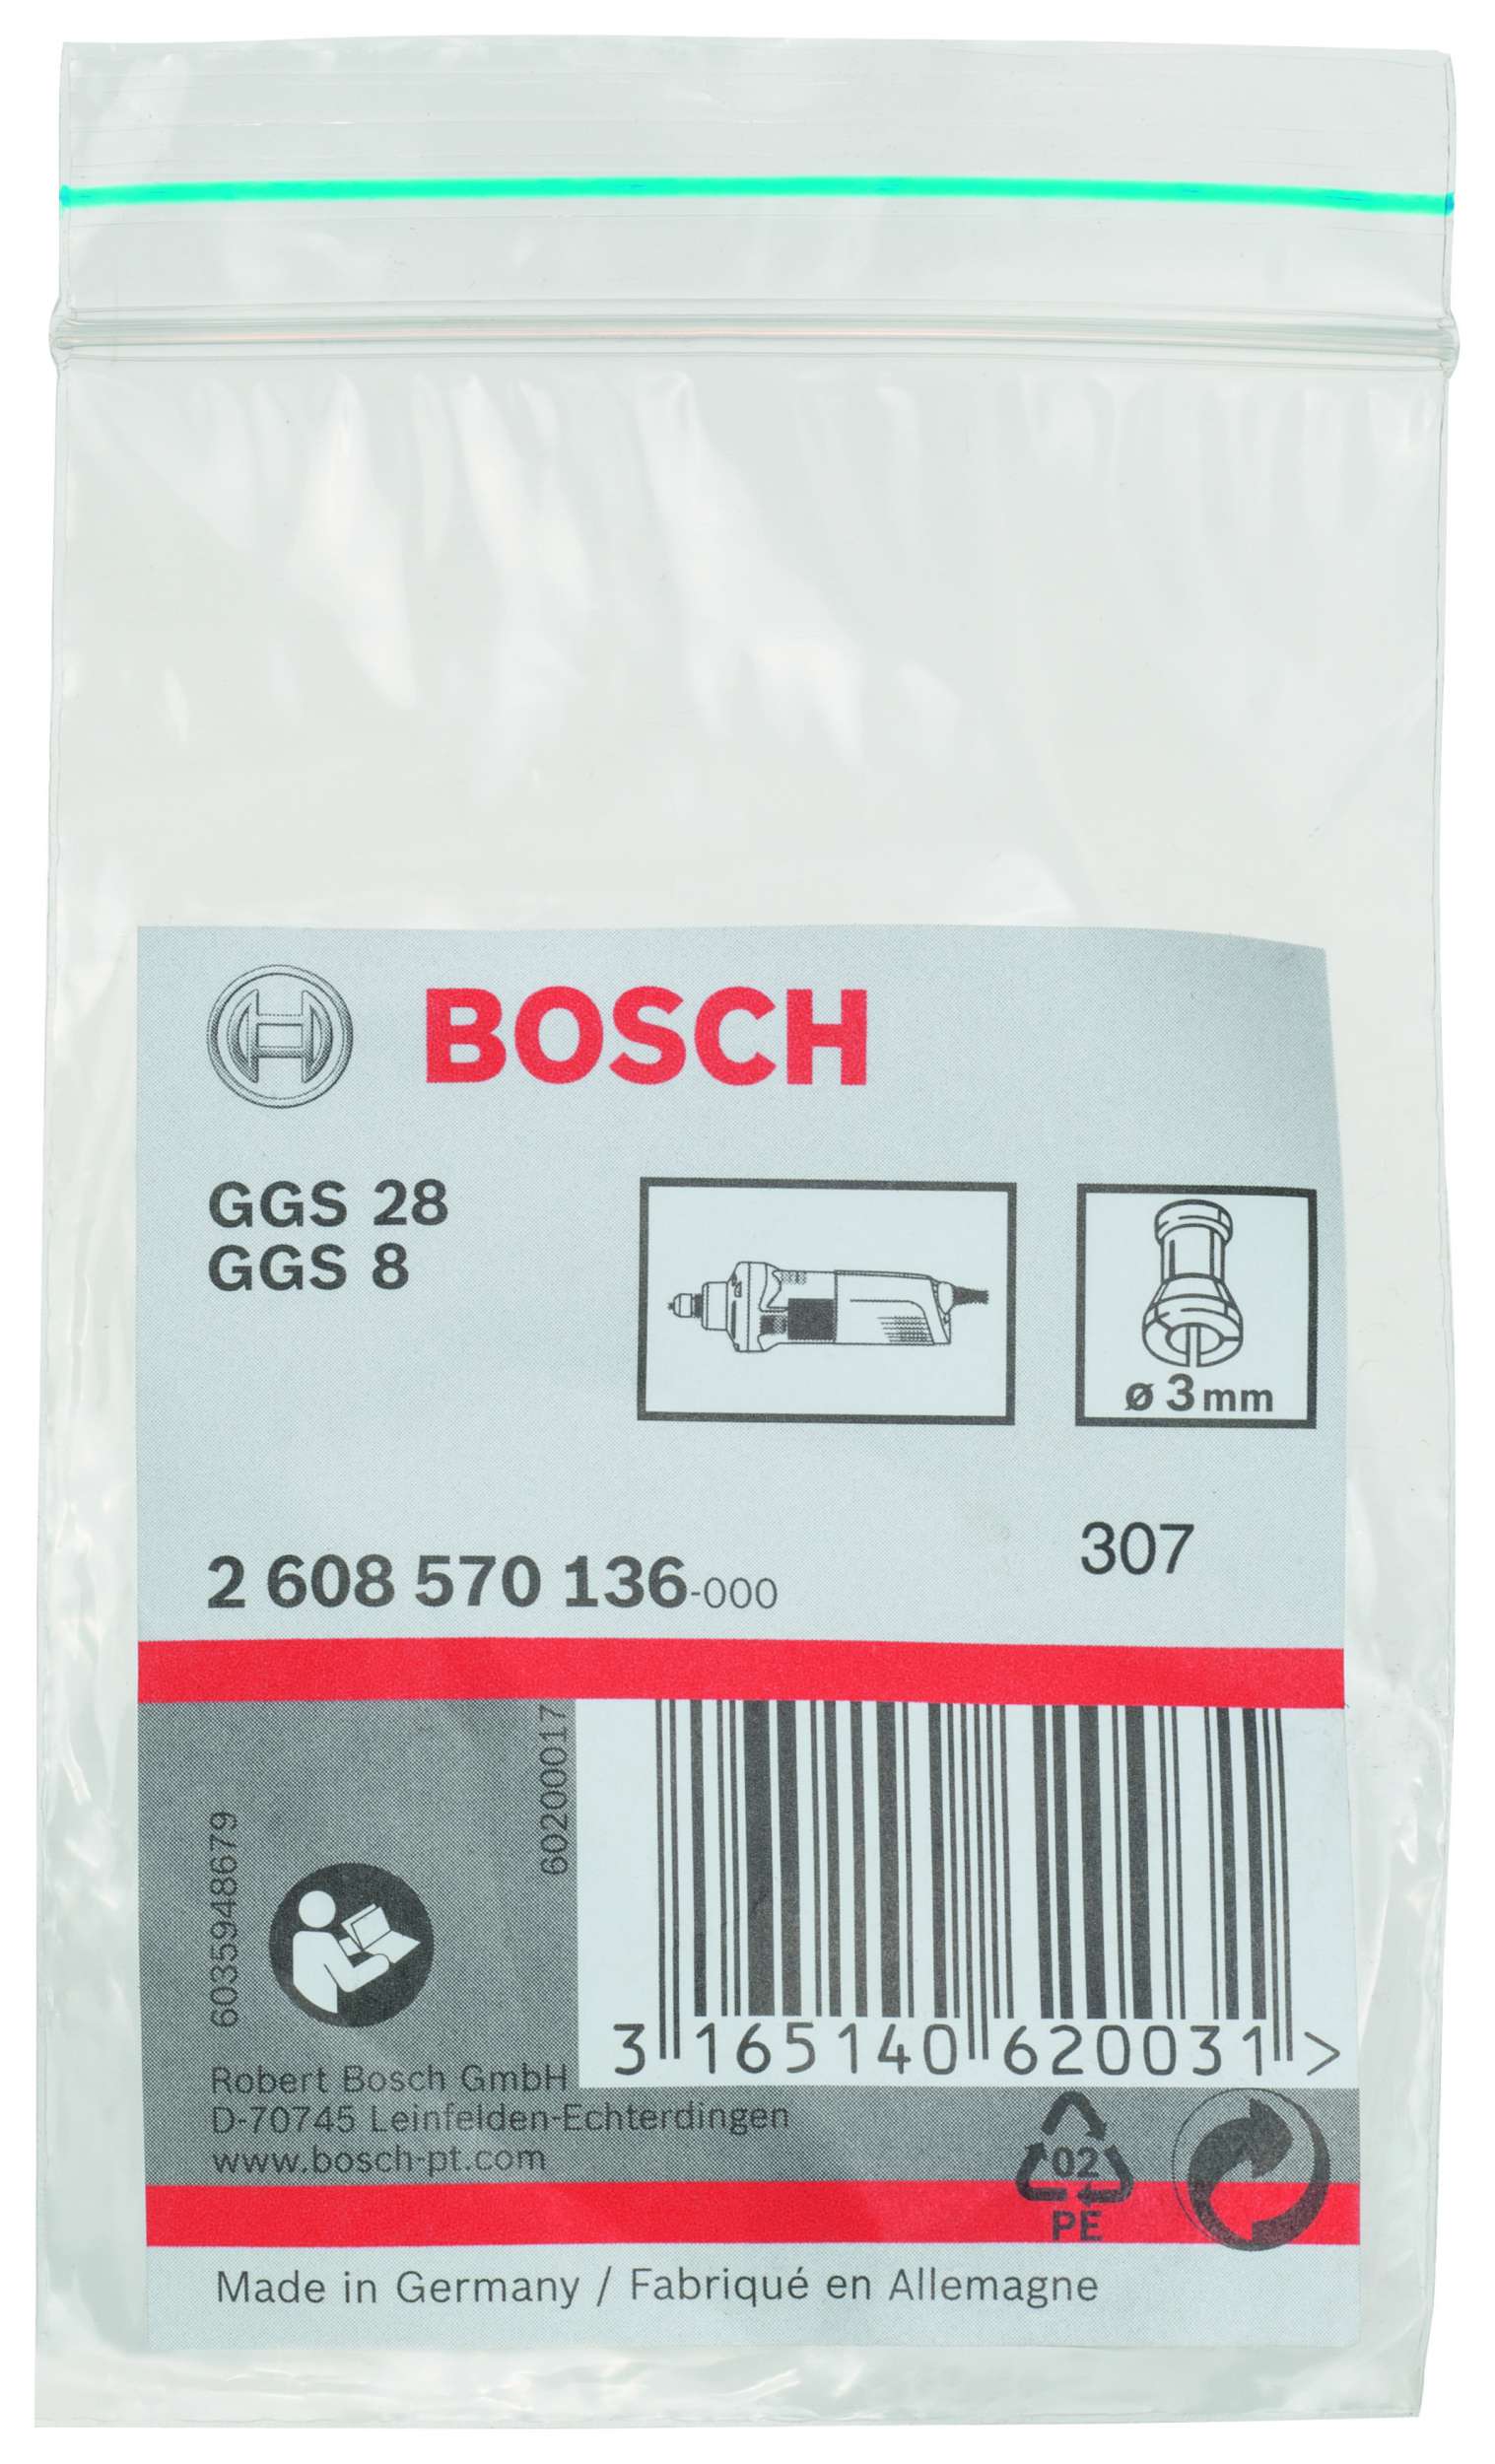 Bosch - GGS 28 CE Penset 3 mm